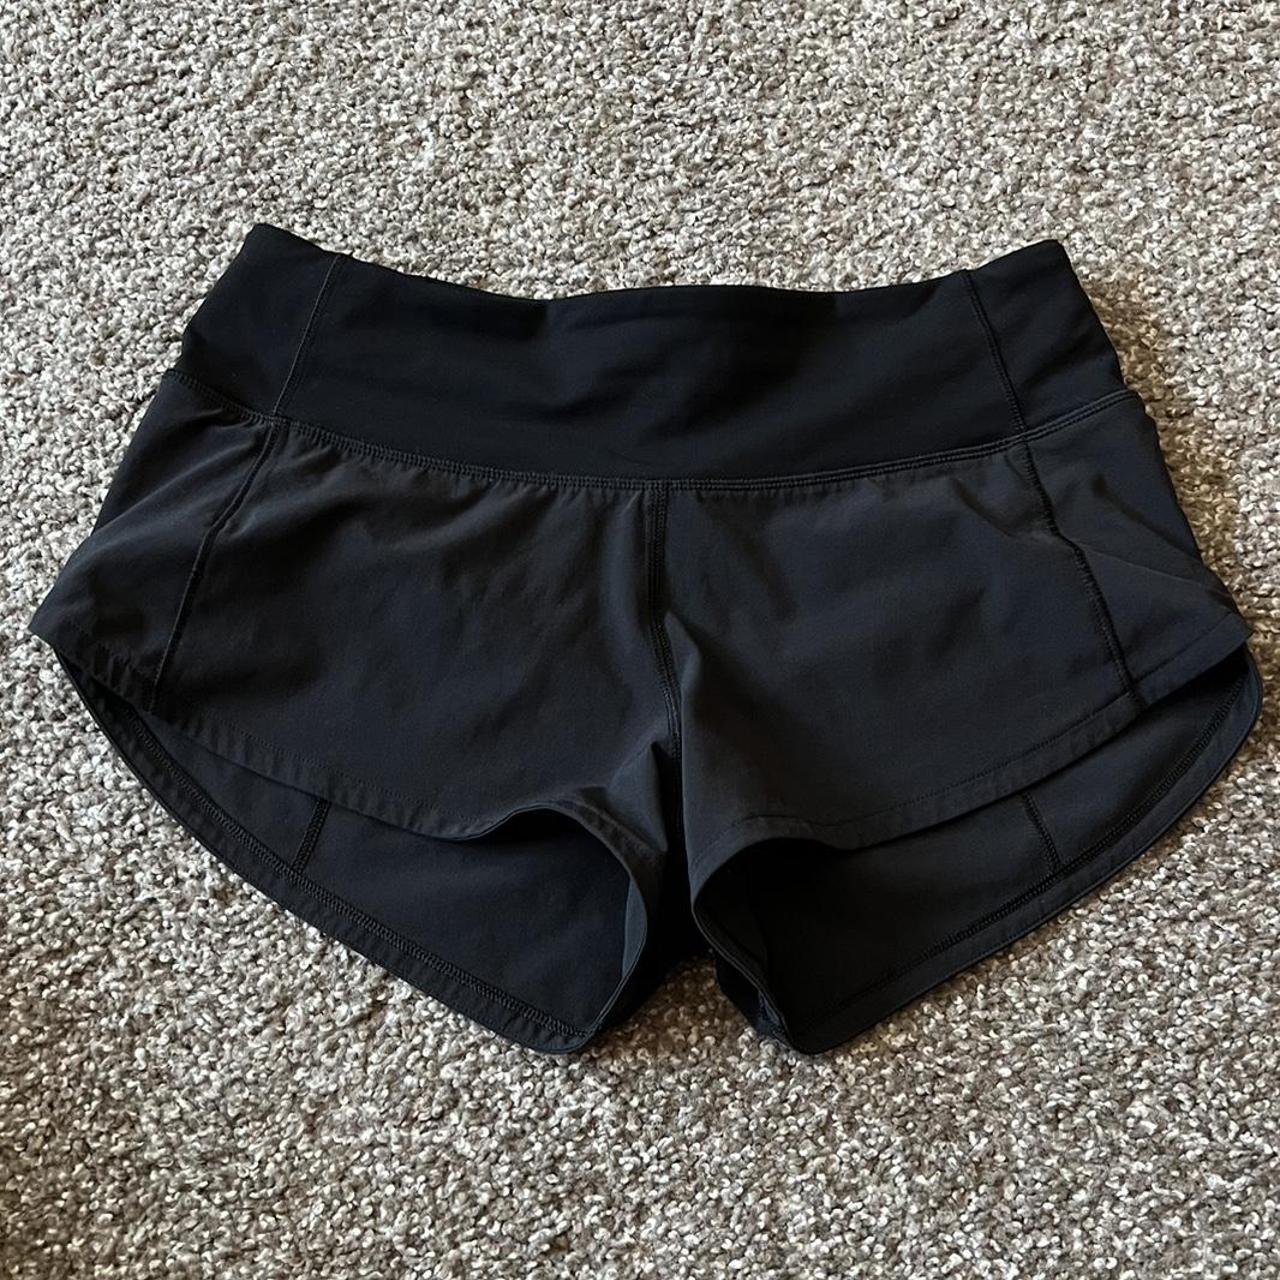 Lululemon shorts size 2, short and super - Depop